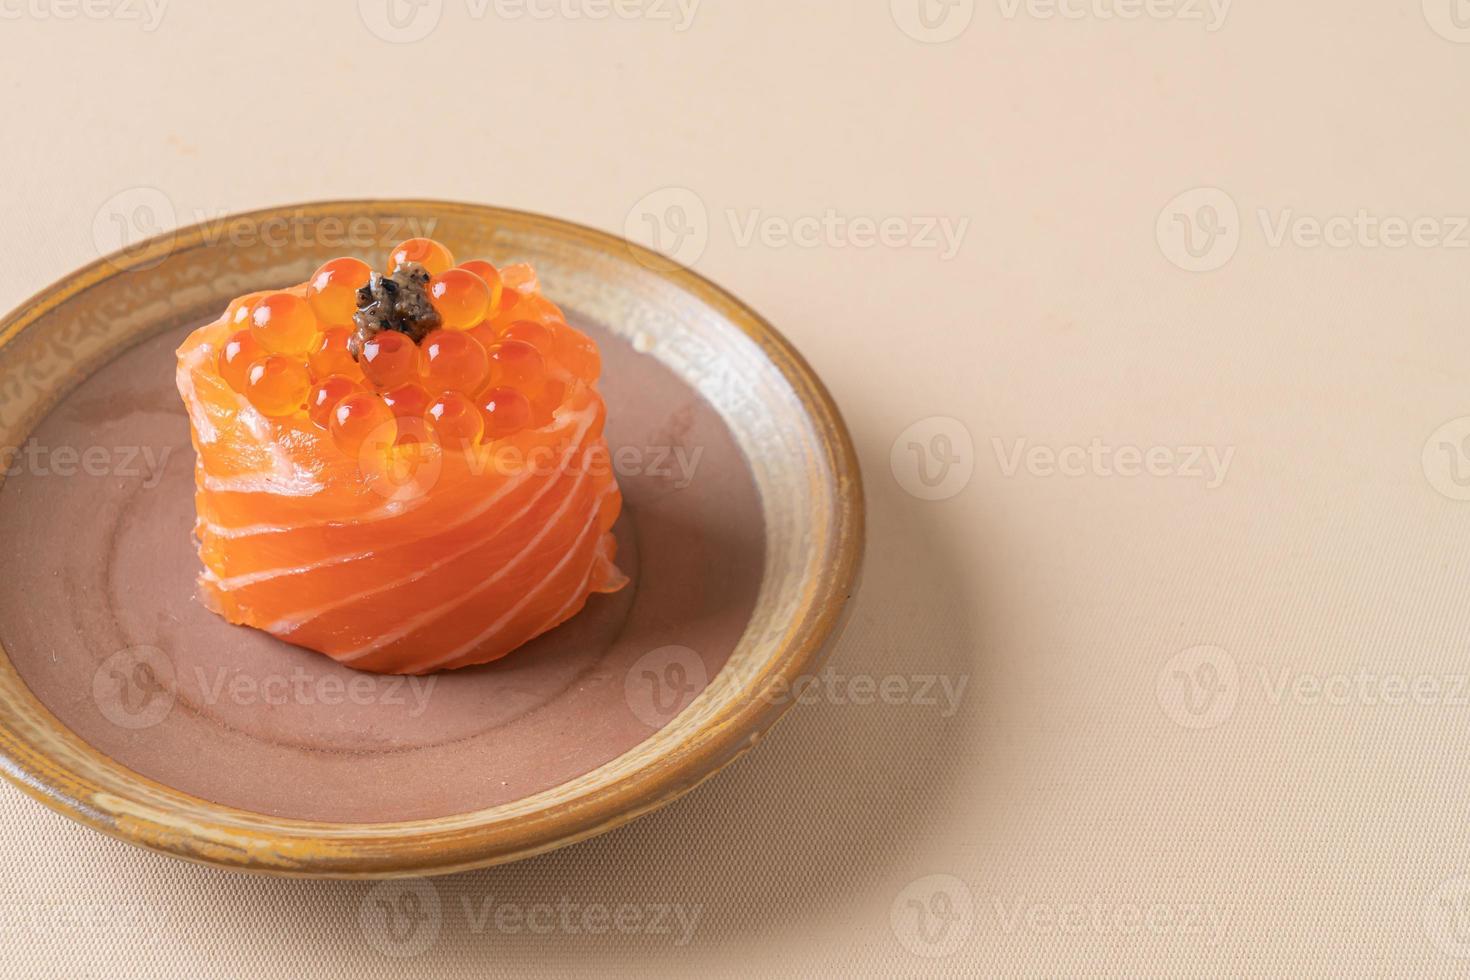 salmone fresco crudo con sushi di uova di salmone - stile giapponese foto